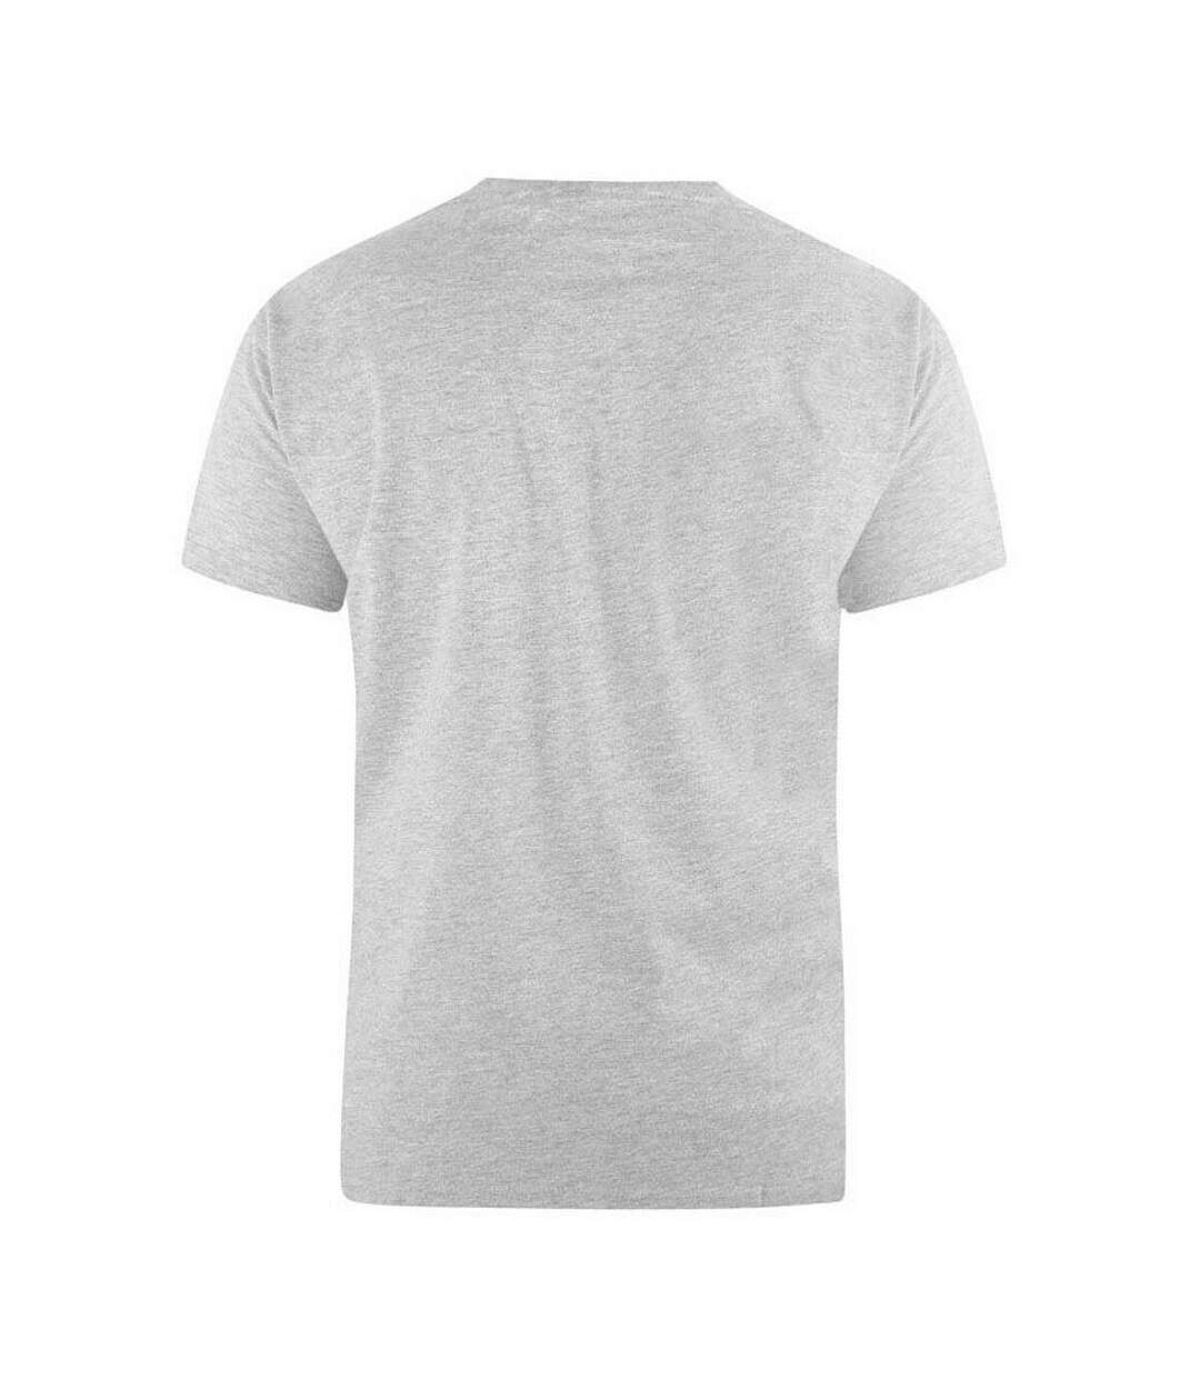 Duke - T-shirt FLYERS - Homme (Gris chiné) - UTDC164